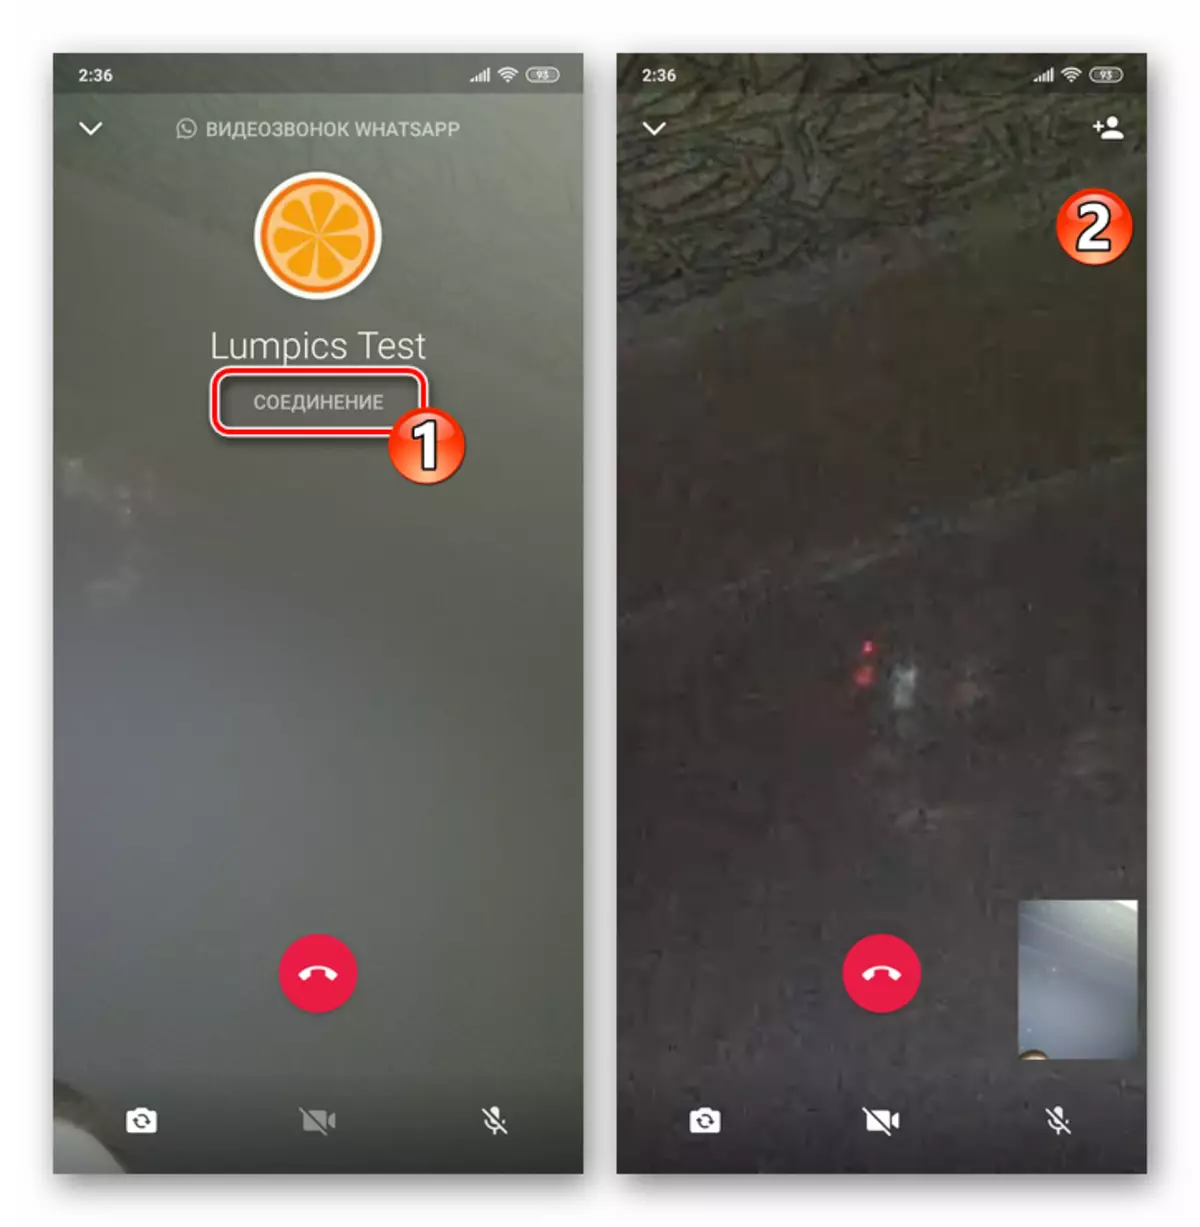 मेसेंजरमध्ये टॅब कॉल्समधून सुरू केलेल्या Android व्हिडिओ कॉल प्रक्रियेसाठी व्हाट्सएप